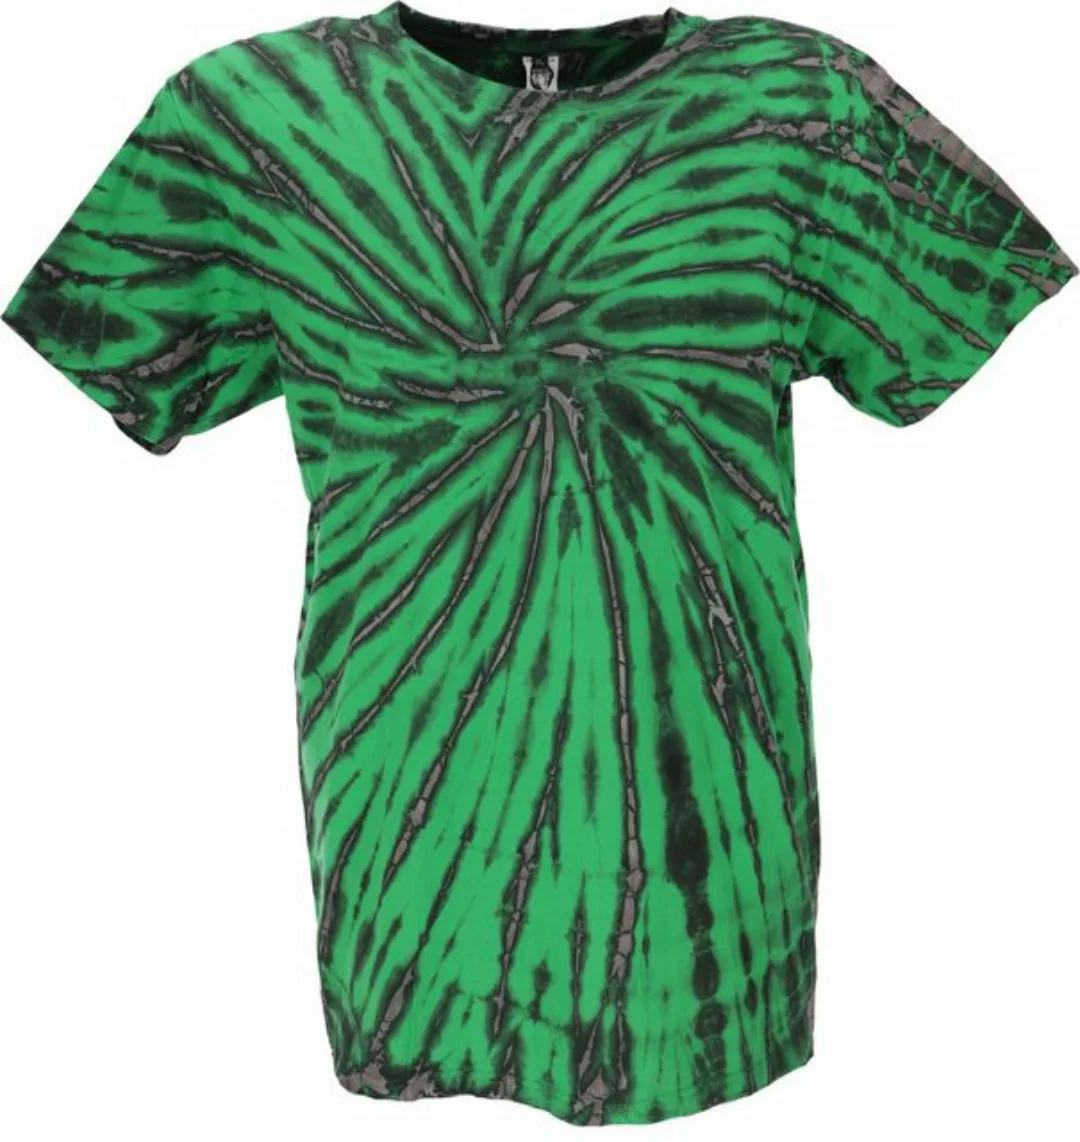 Guru-Shop T-Shirt Batik T-Shirt, Herren Kurzarm Tie Dye Shirt -.. Handarbei günstig online kaufen